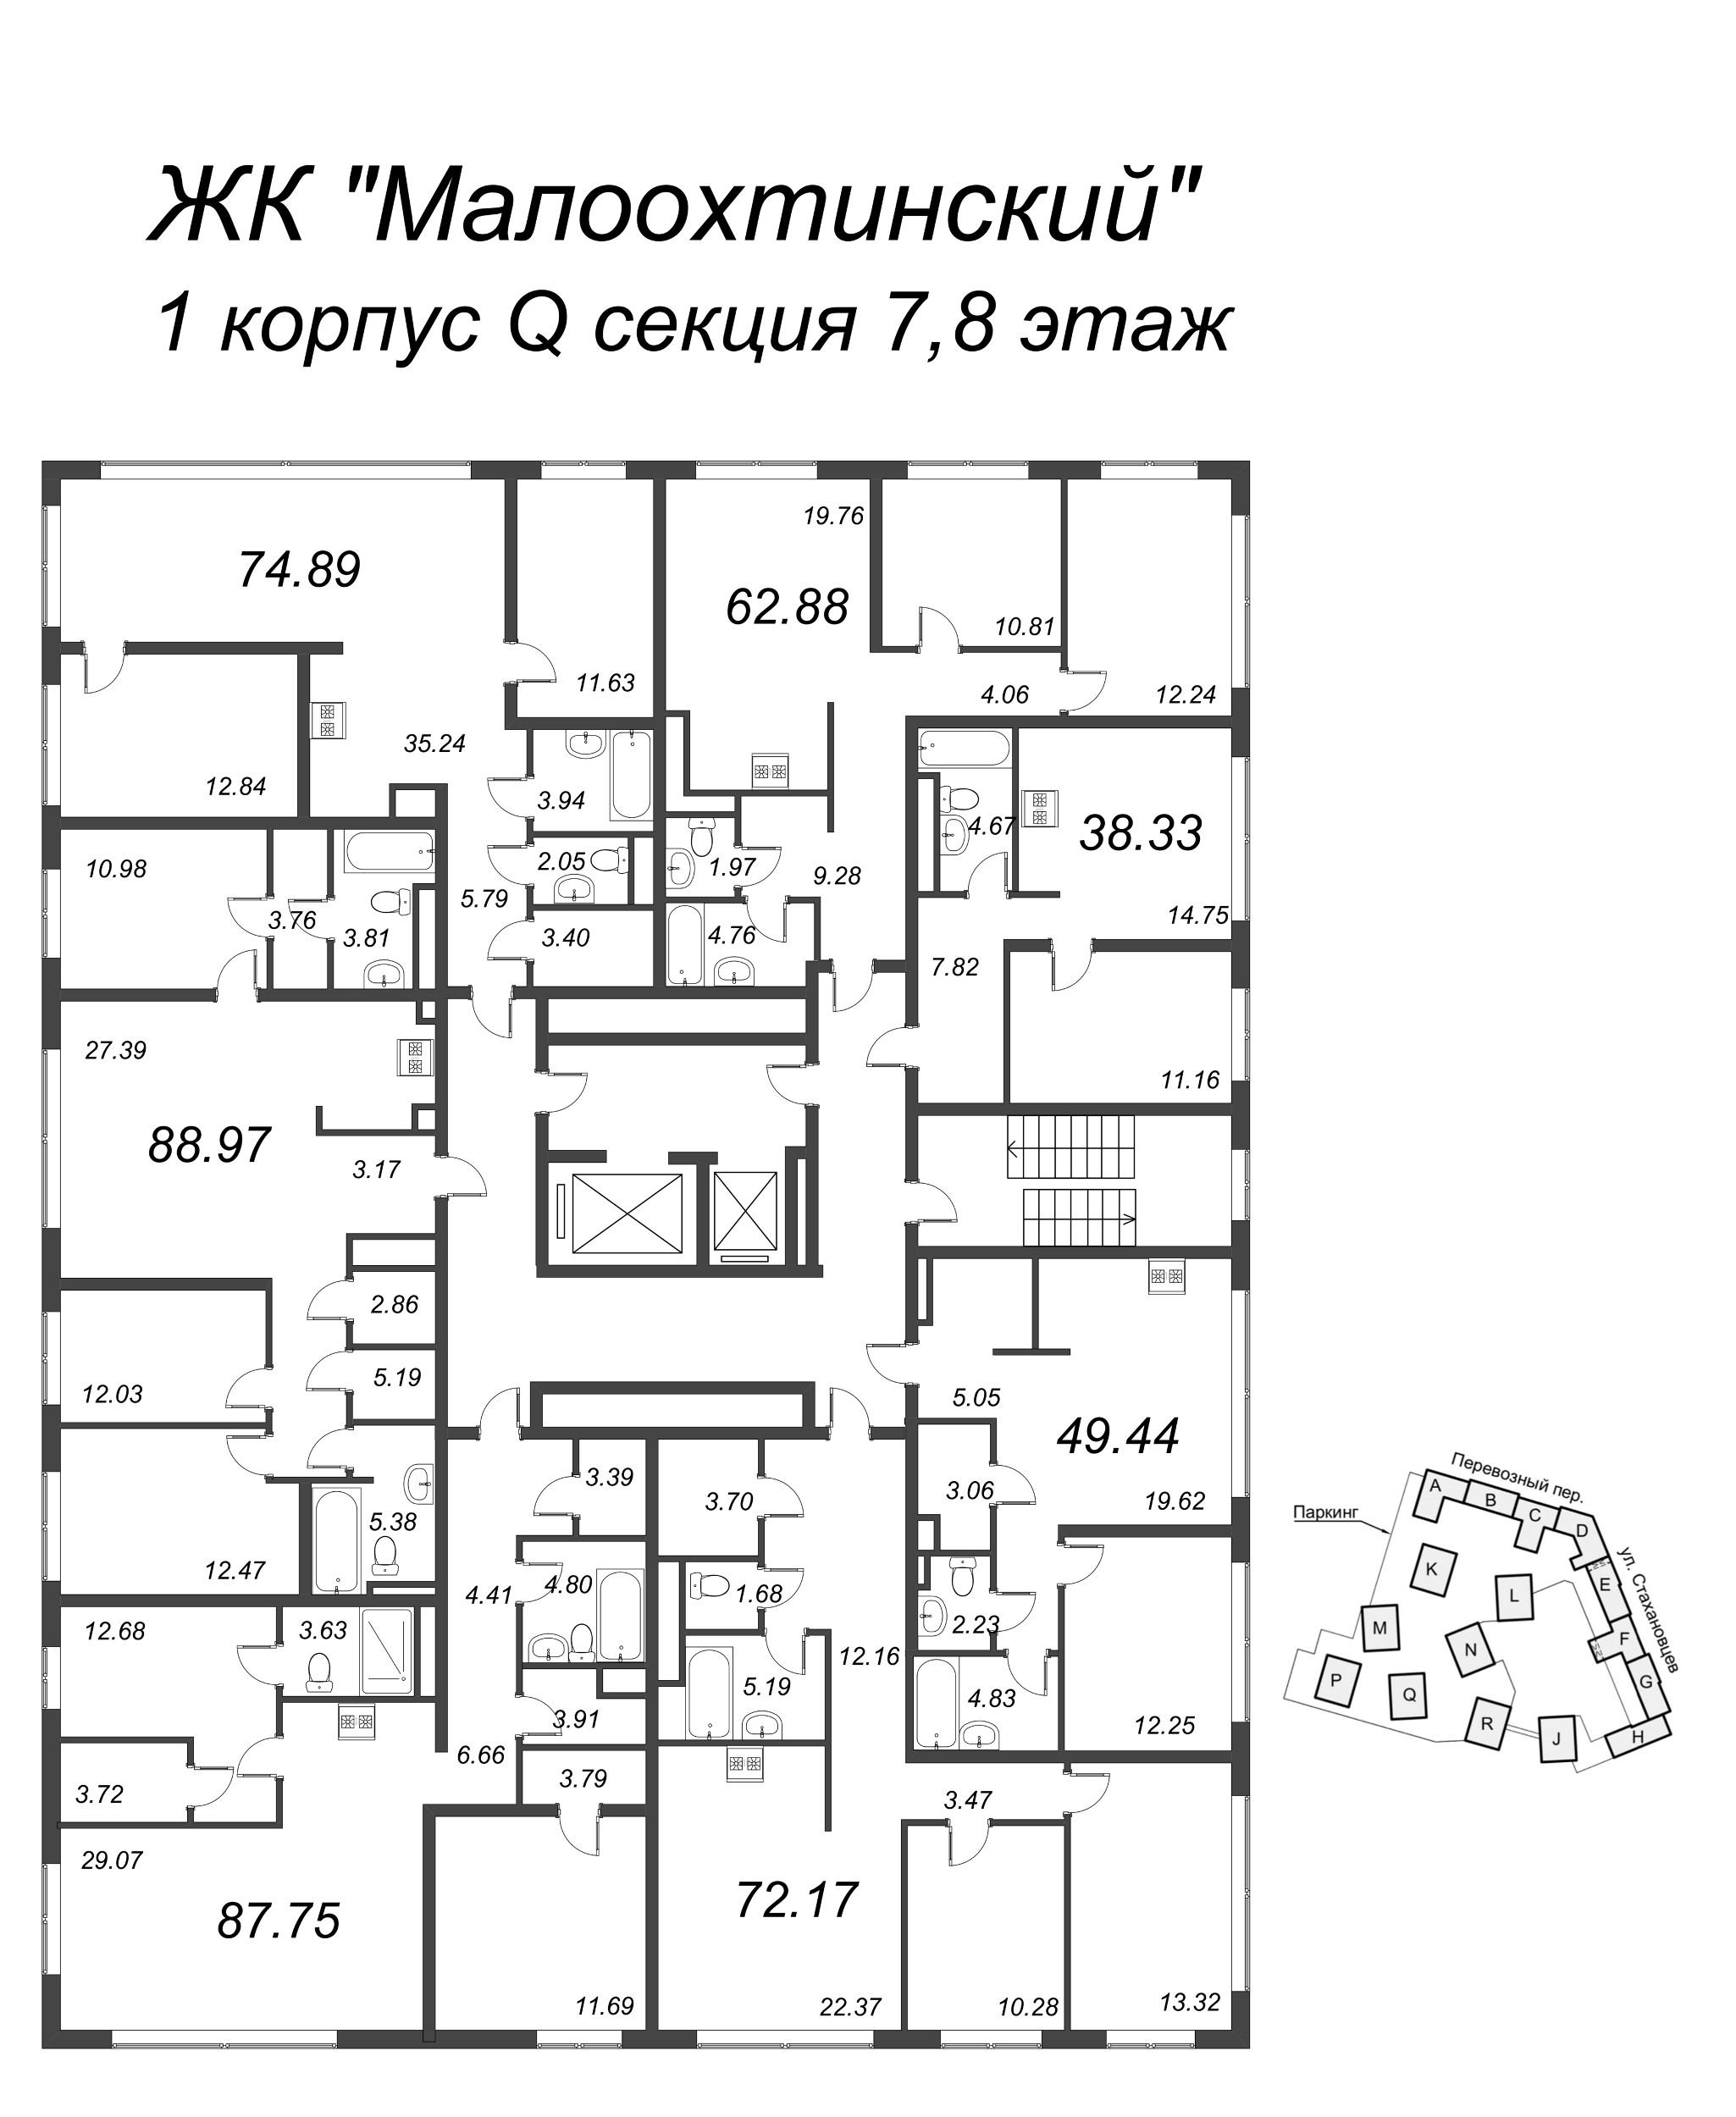 2-комнатная (Евро) квартира, 39.4 м² в ЖК "Малоохтинский, 68" - планировка этажа